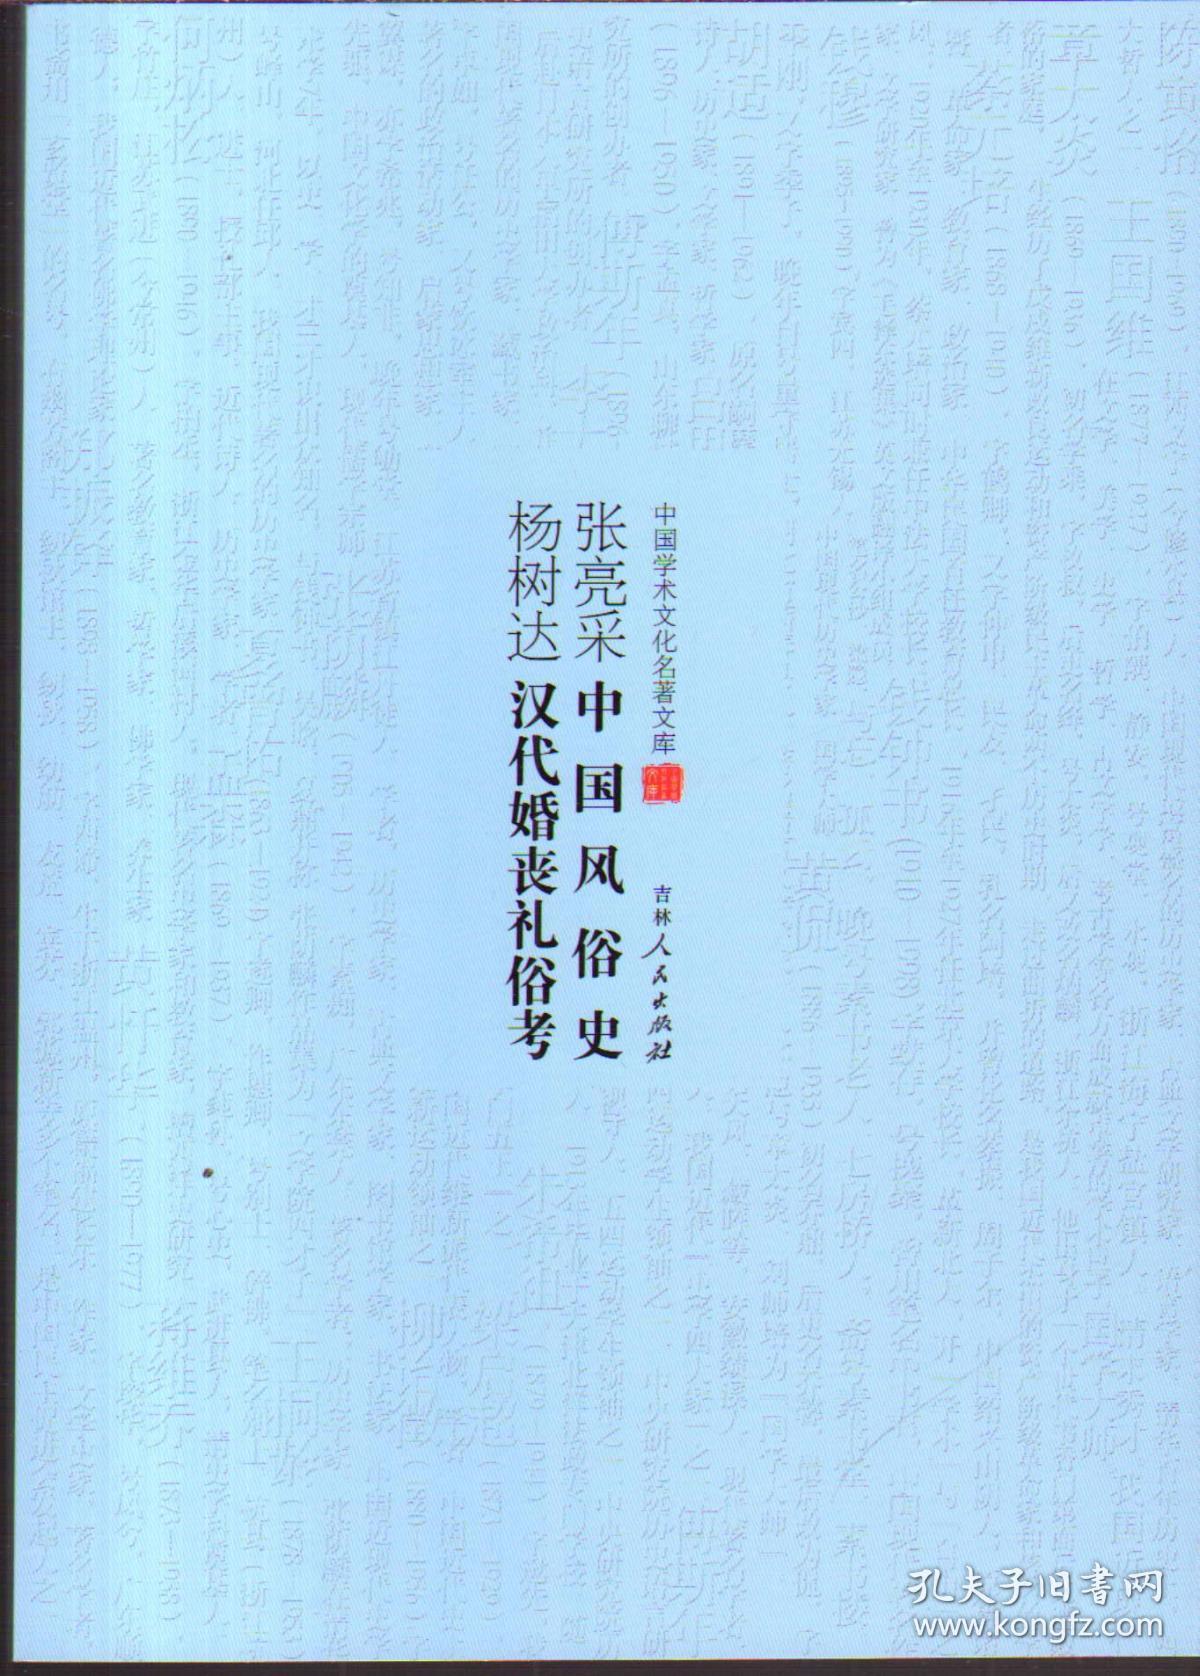 张亮采中国风俗史、杨树达汉代婚丧礼俗考